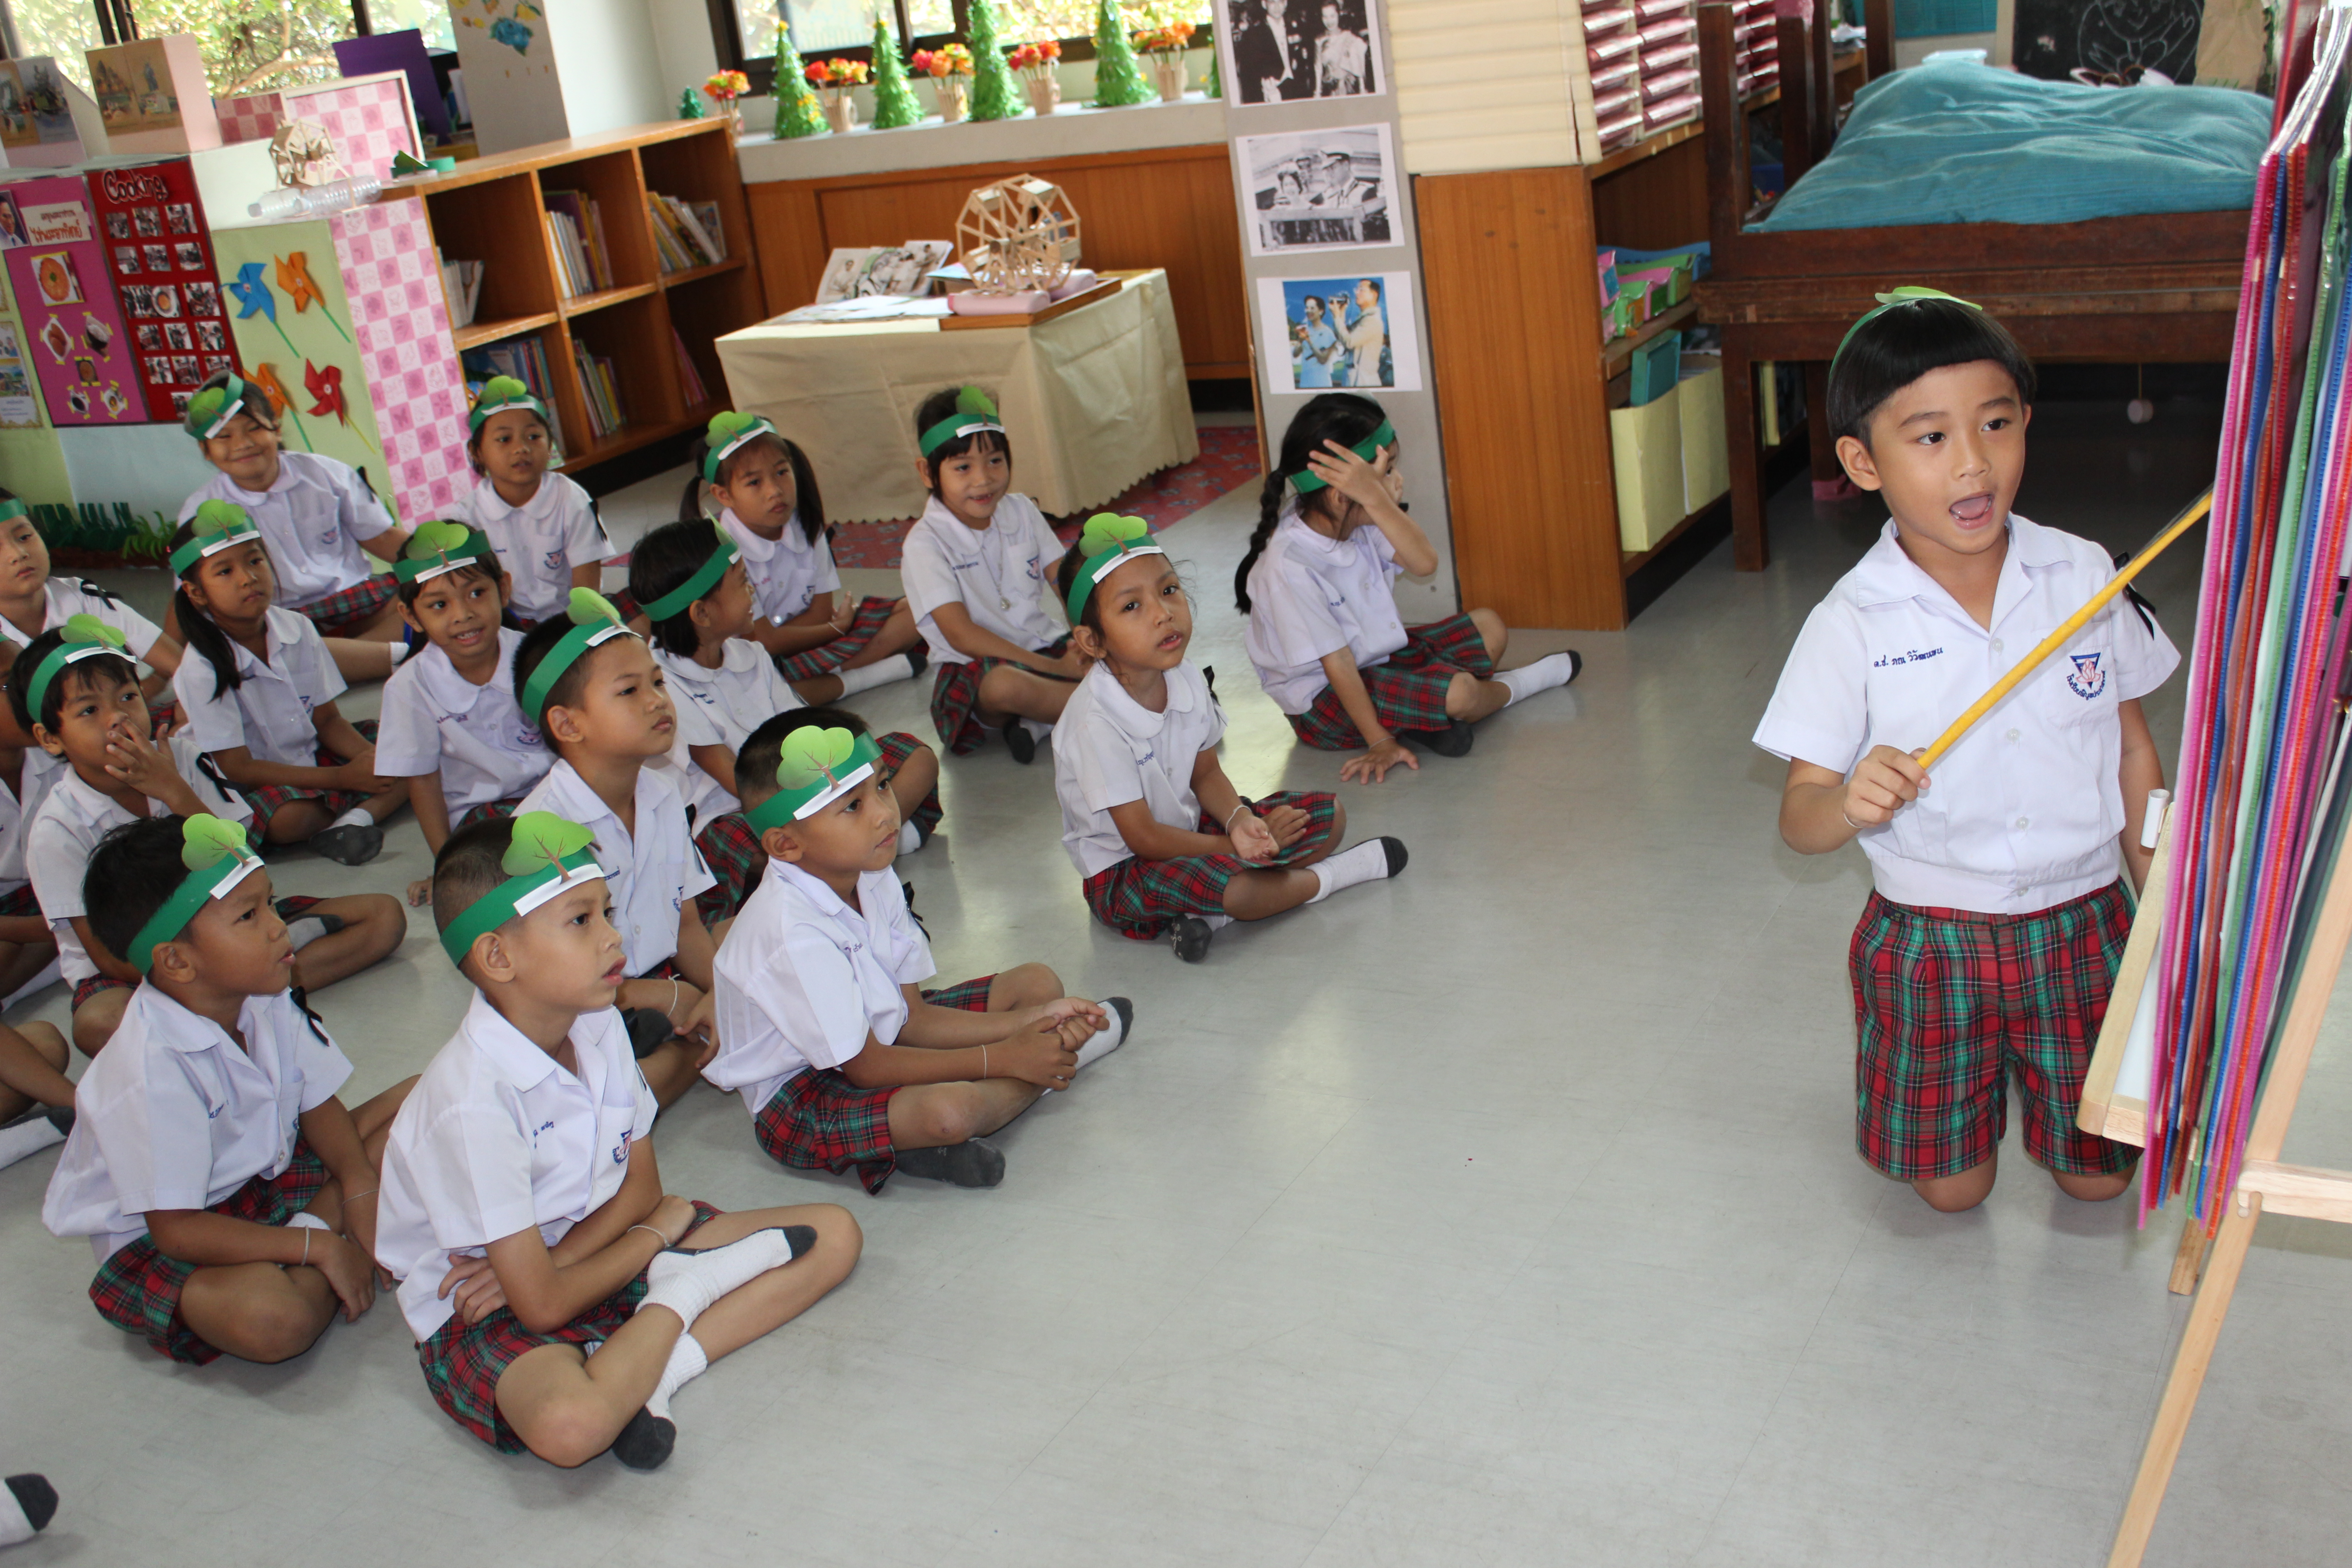 โรงเรียน พิบูล ประชาสรรค์ ค่า เทอม พากย์ไทย